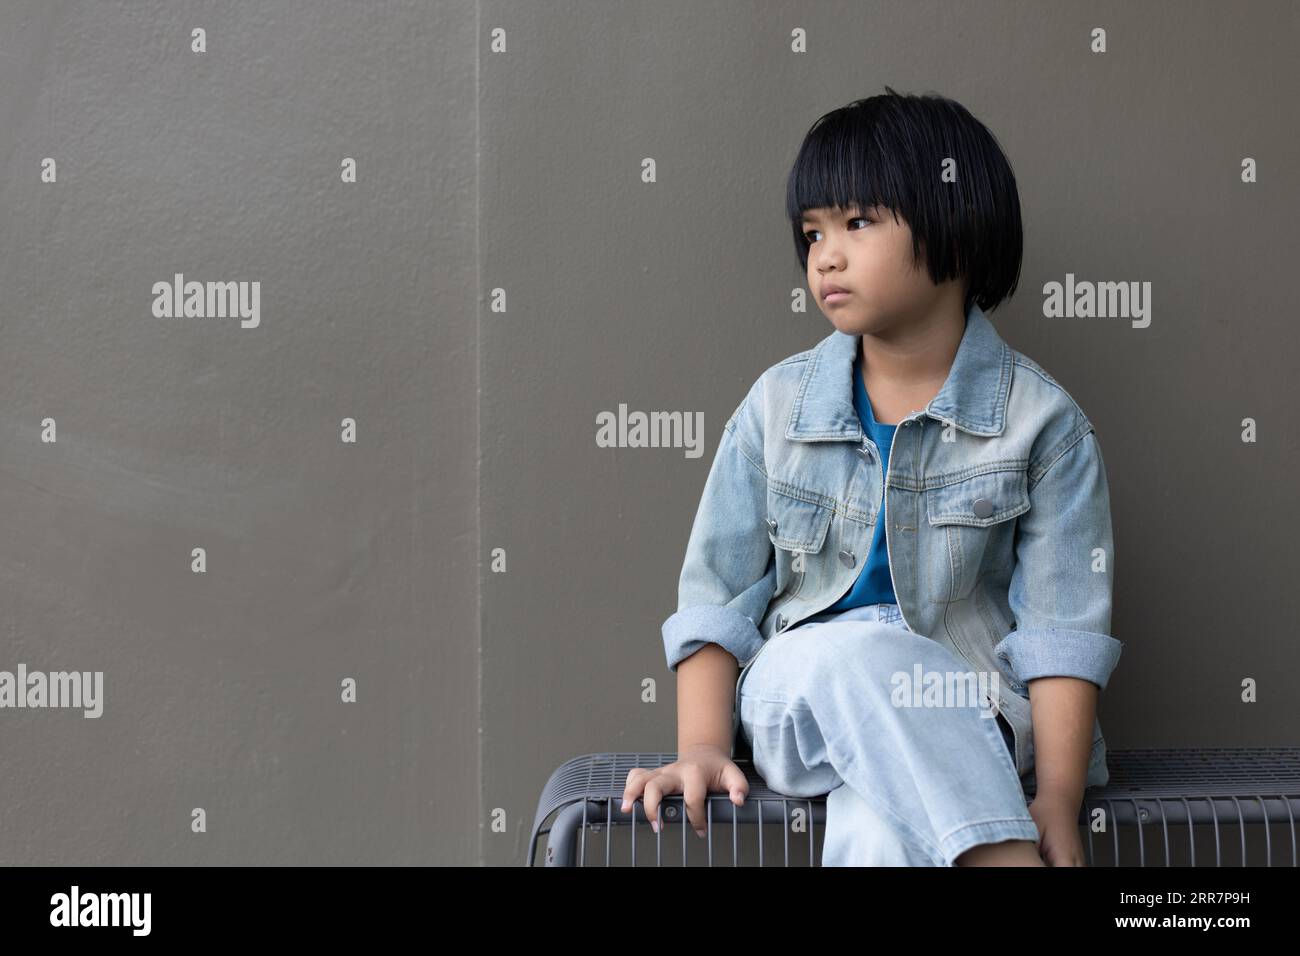 Fille enfant portant un costume de jeans bleu debout avec son amie en studio. Une fille triste regardant loin sur fond de mur gris dans la maison des parents de la famille Banque D'Images